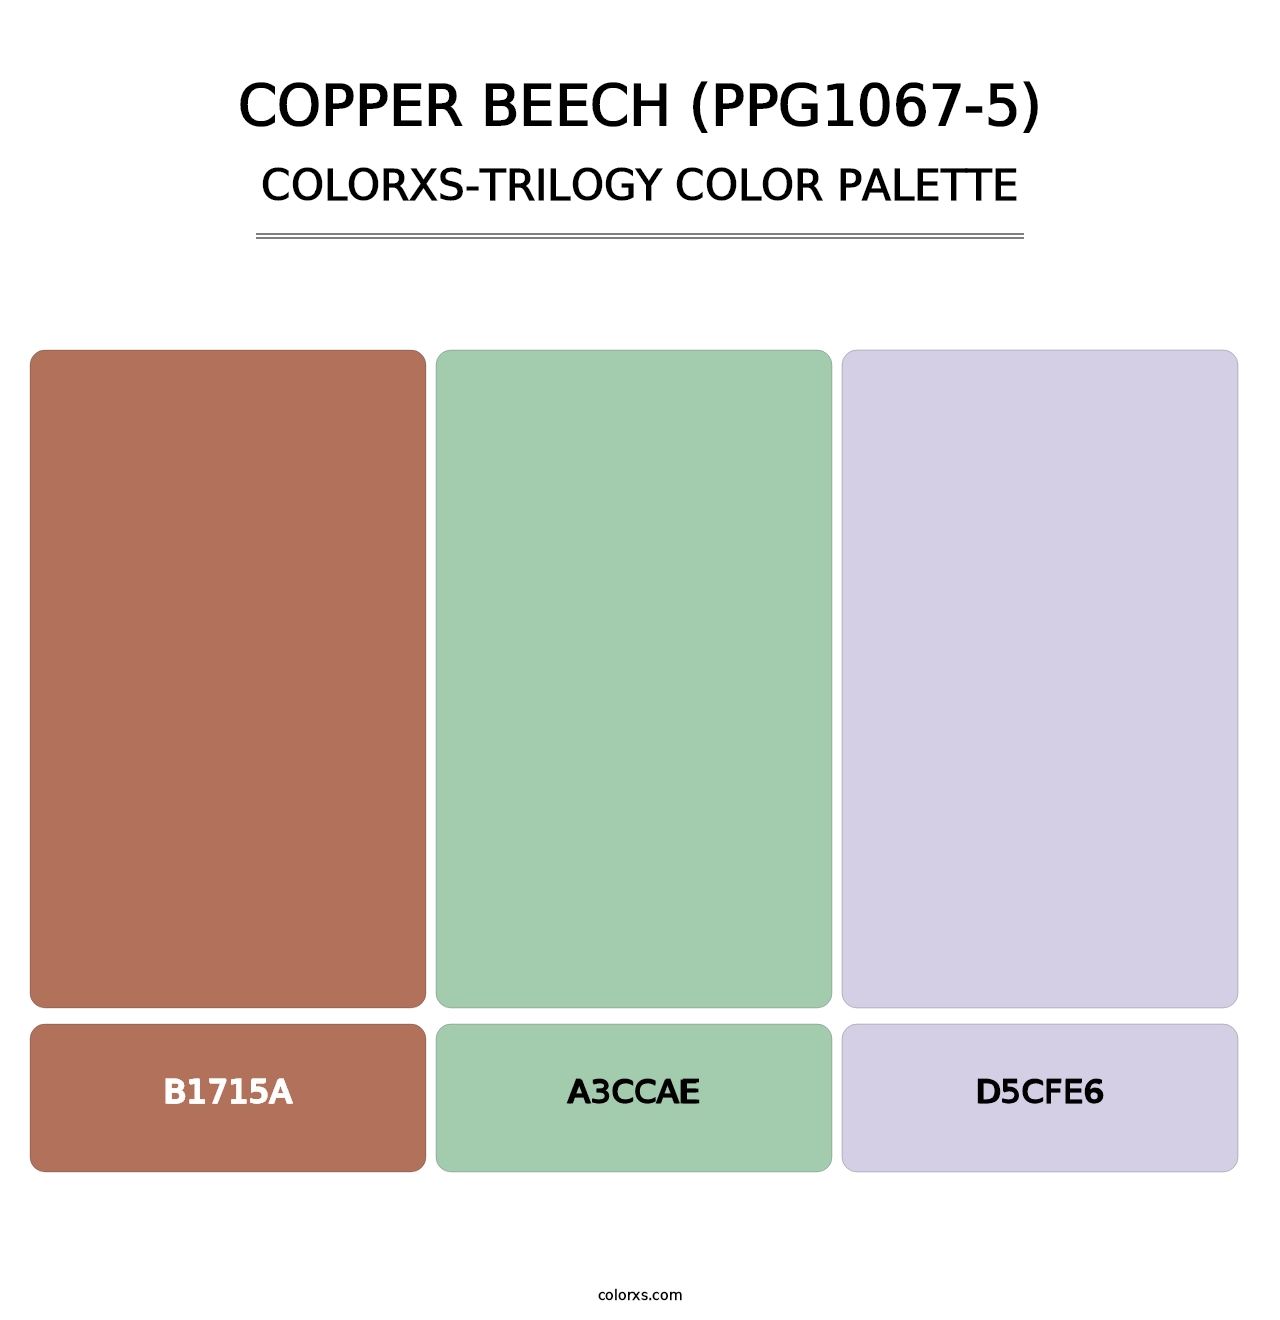 Copper Beech (PPG1067-5) - Colorxs Trilogy Palette